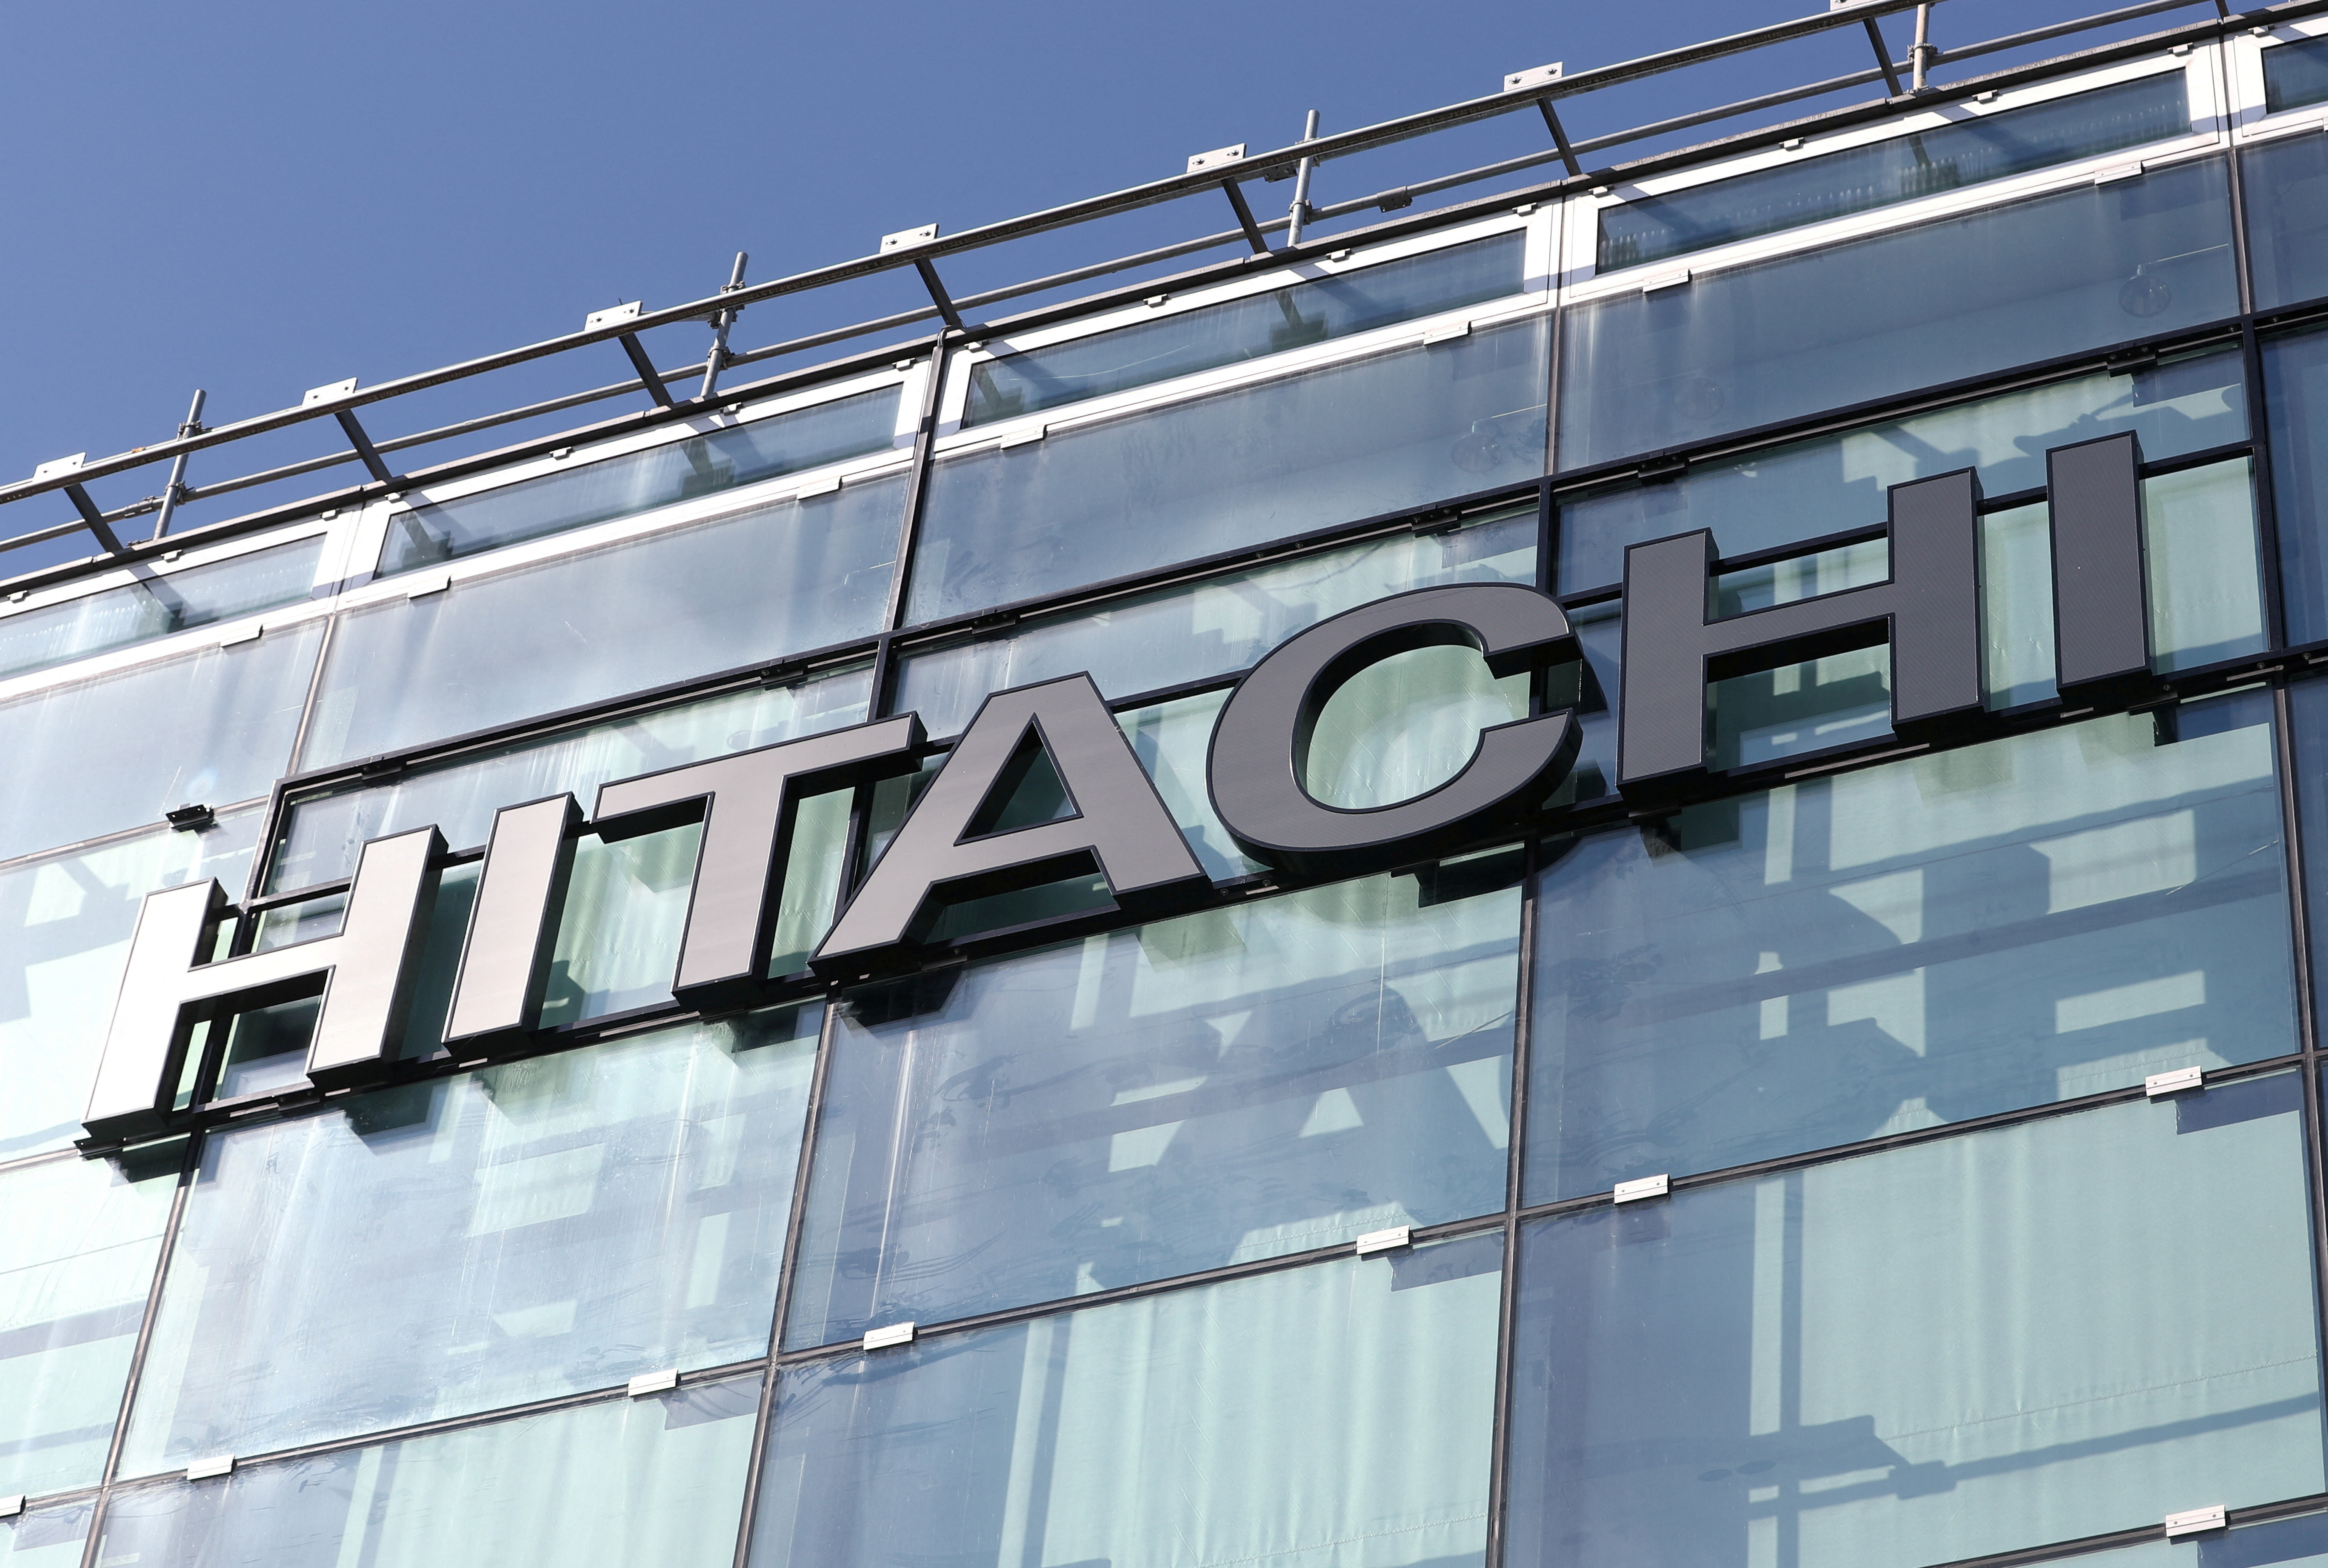 Η Hitachi επιδιώκει την έγκριση της Ευρωπαϊκής Ένωσης για τη συμφωνία της Thales για την πώληση περιουσιακών στοιχείων στη Γαλλία και τη Γερμανία